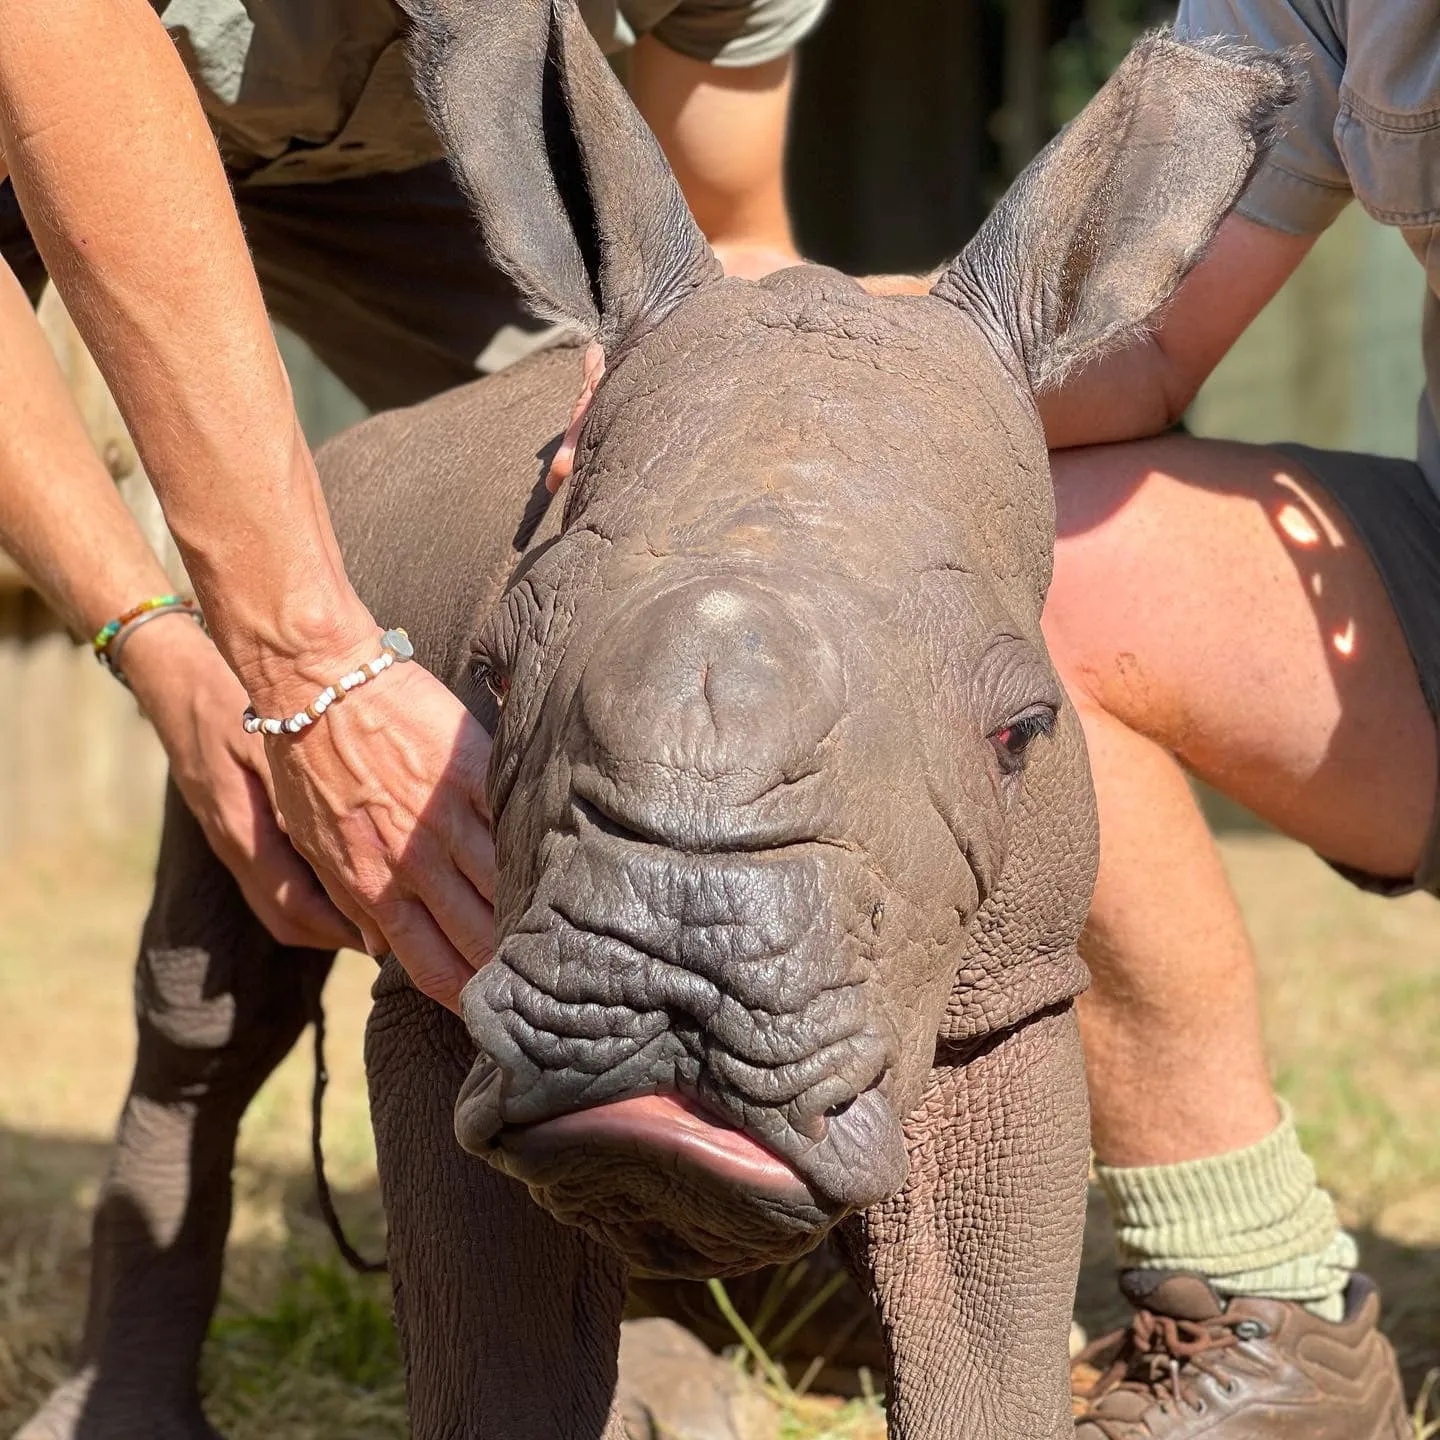 Работники заповедника спасли новорожденного носорога